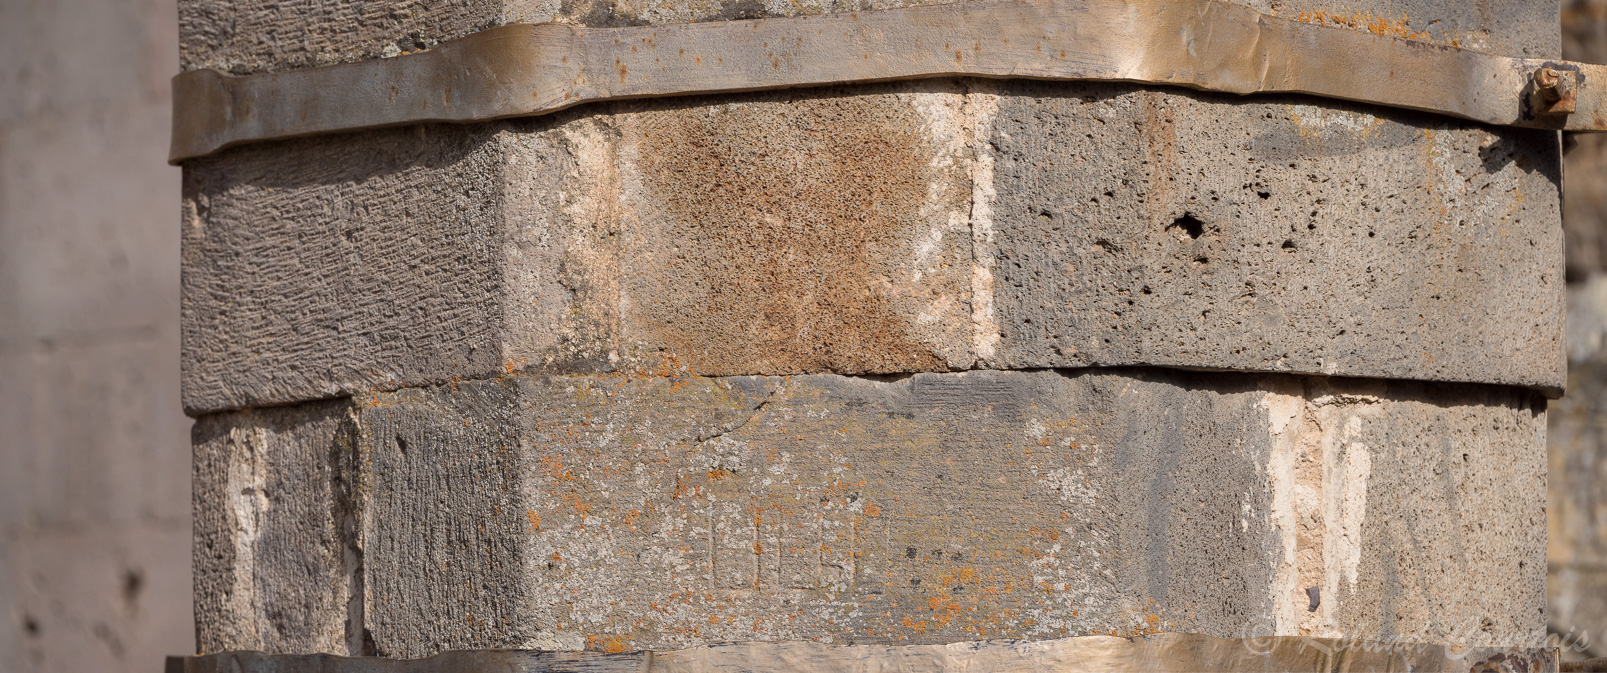 Monastère de Tatev. Au centre du cloître Le Gavazan est un pilier octogonal en pierre très ouvragée, couronné par un khatchkar dans sa niche ajourée.